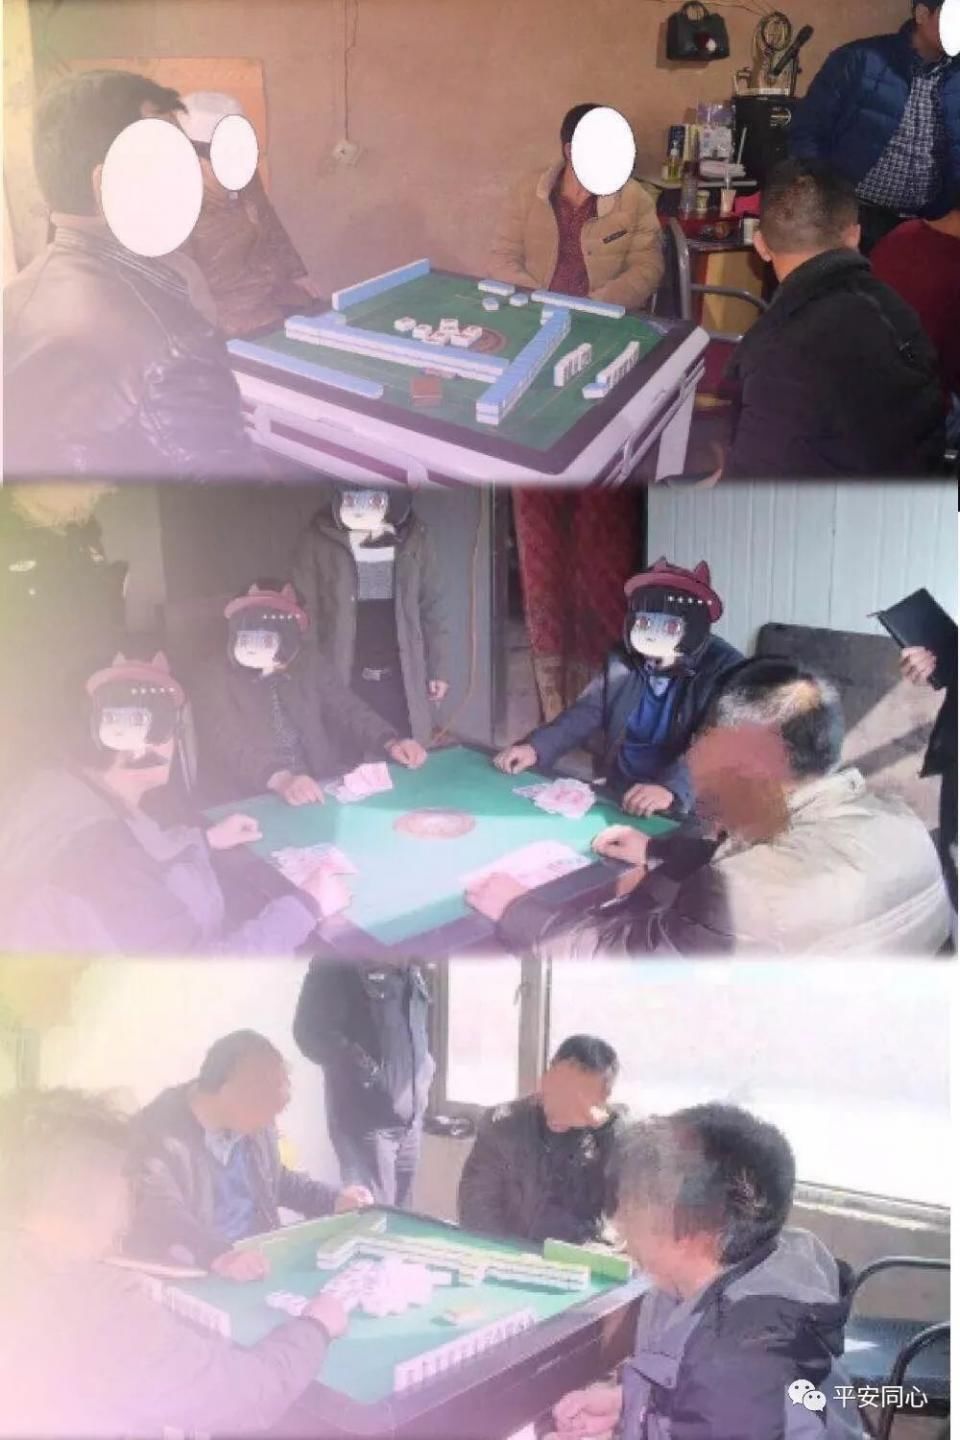 宁夏已有26人被拘留!举报赌博最高奖励2万元!